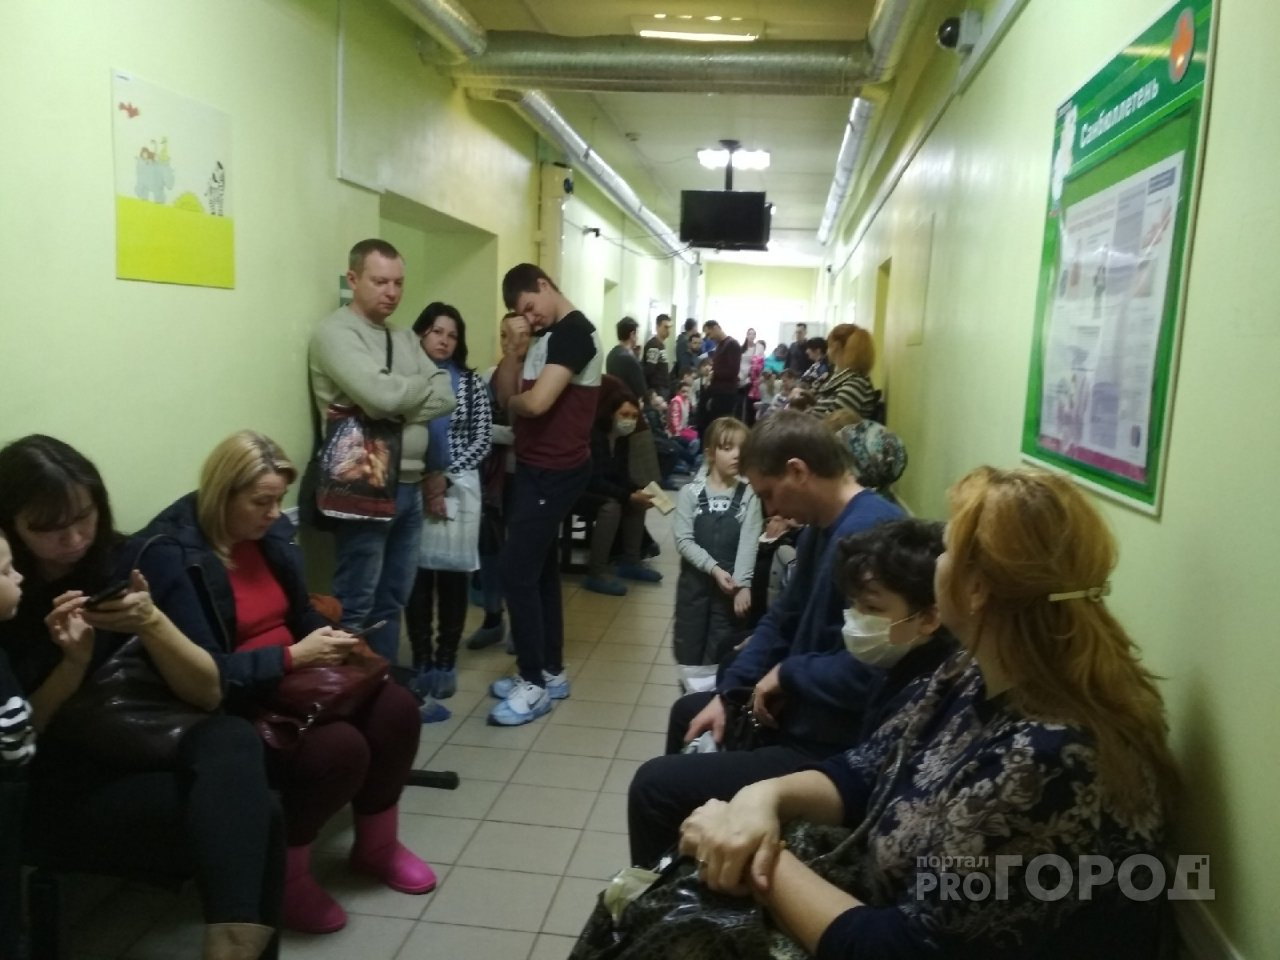 "Этих больных надо концентрировать": врачи о пациентах в Ярославле